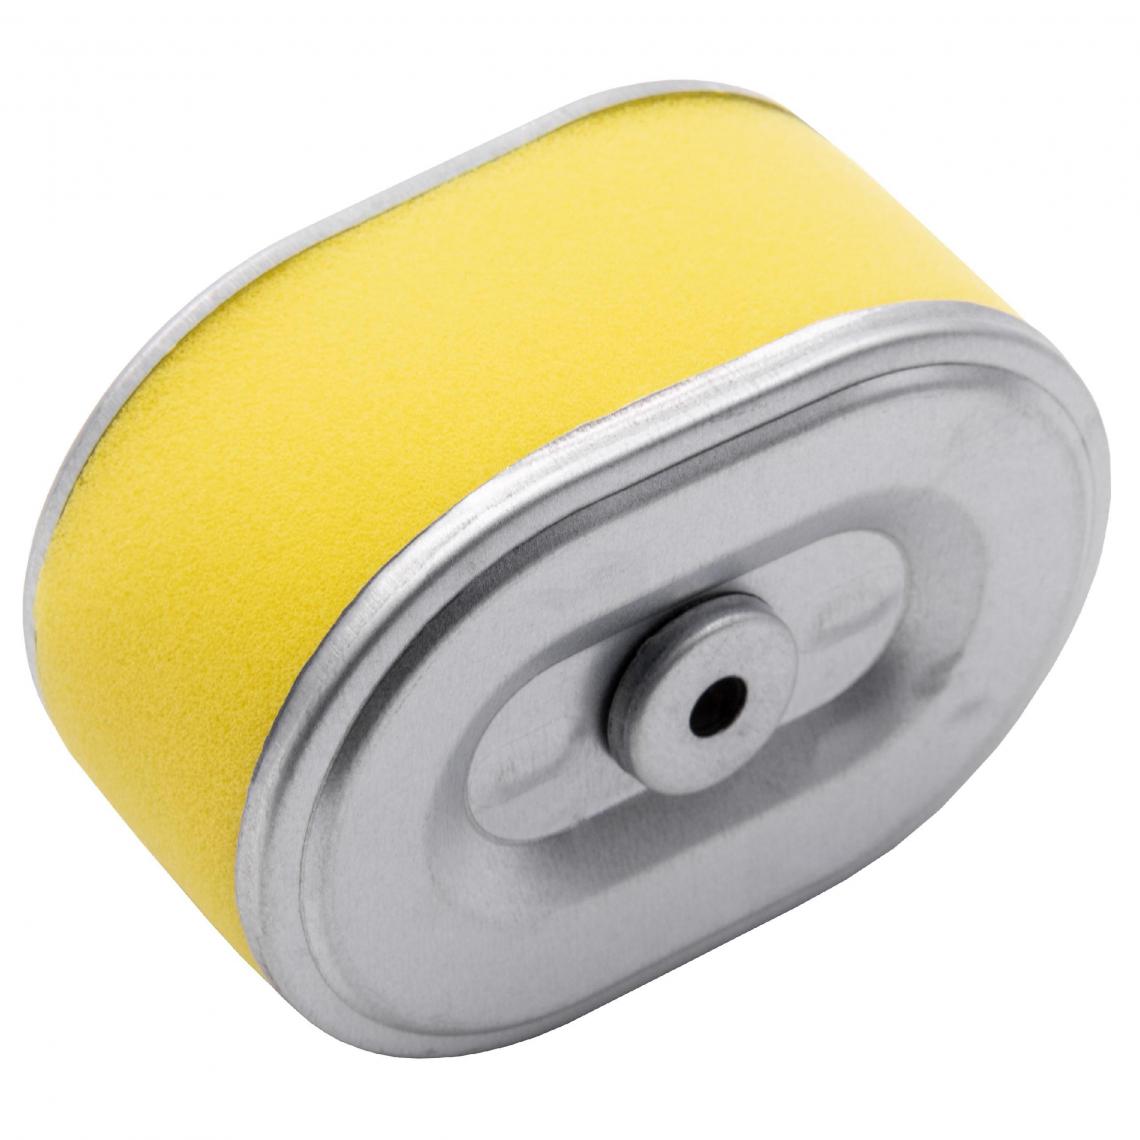 Vhbw - vhbw Filtre à air avec préfiltre de rechange jaune, argent remplace Rotary 7044 compatible avec tondeuse à gazon; 10,1 x 7,2 x 5,1cm - Accessoires tondeuses